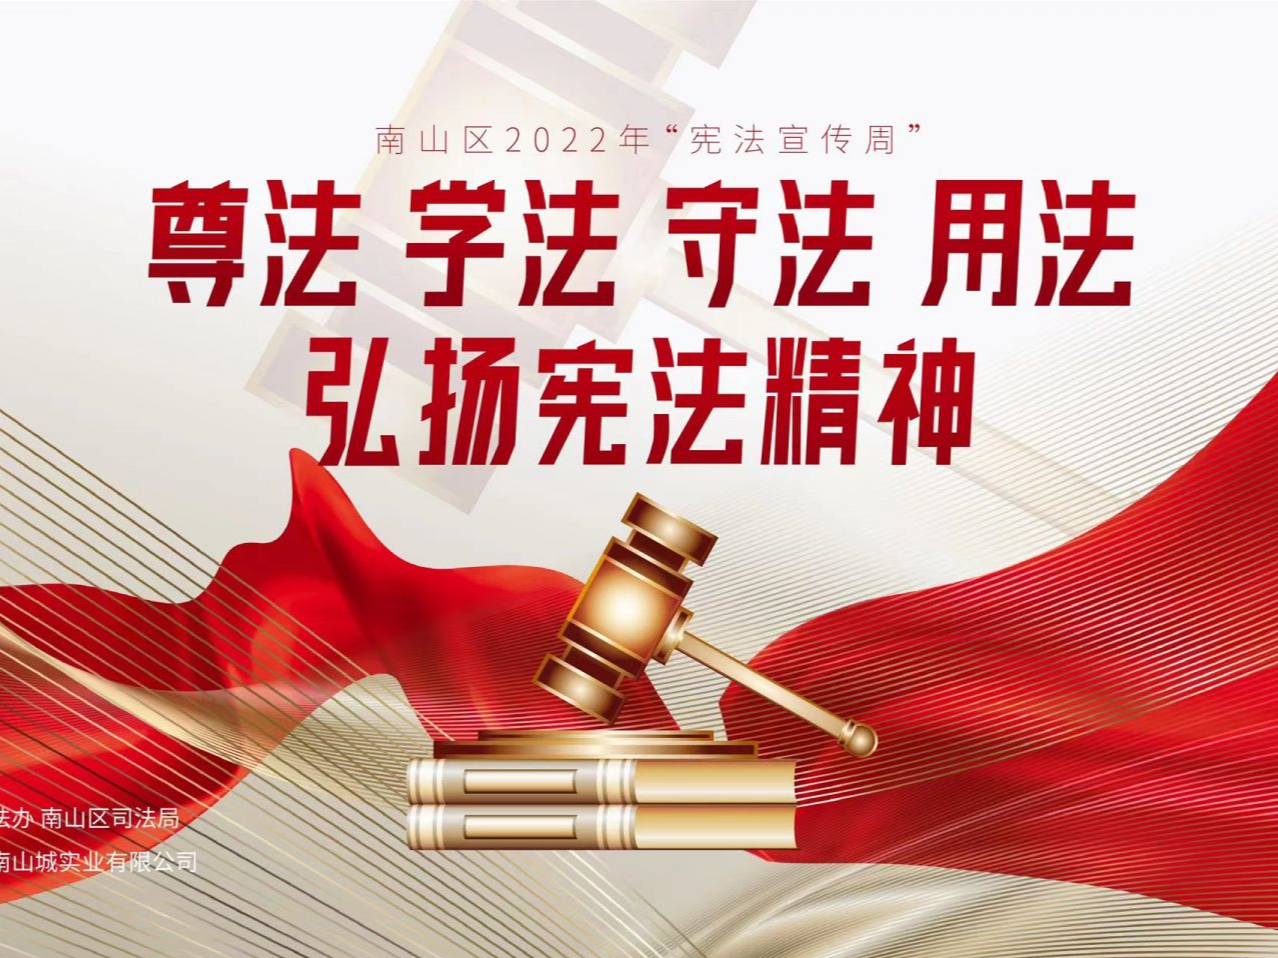 南山书城举行2022年“宪法宣传周” 活动